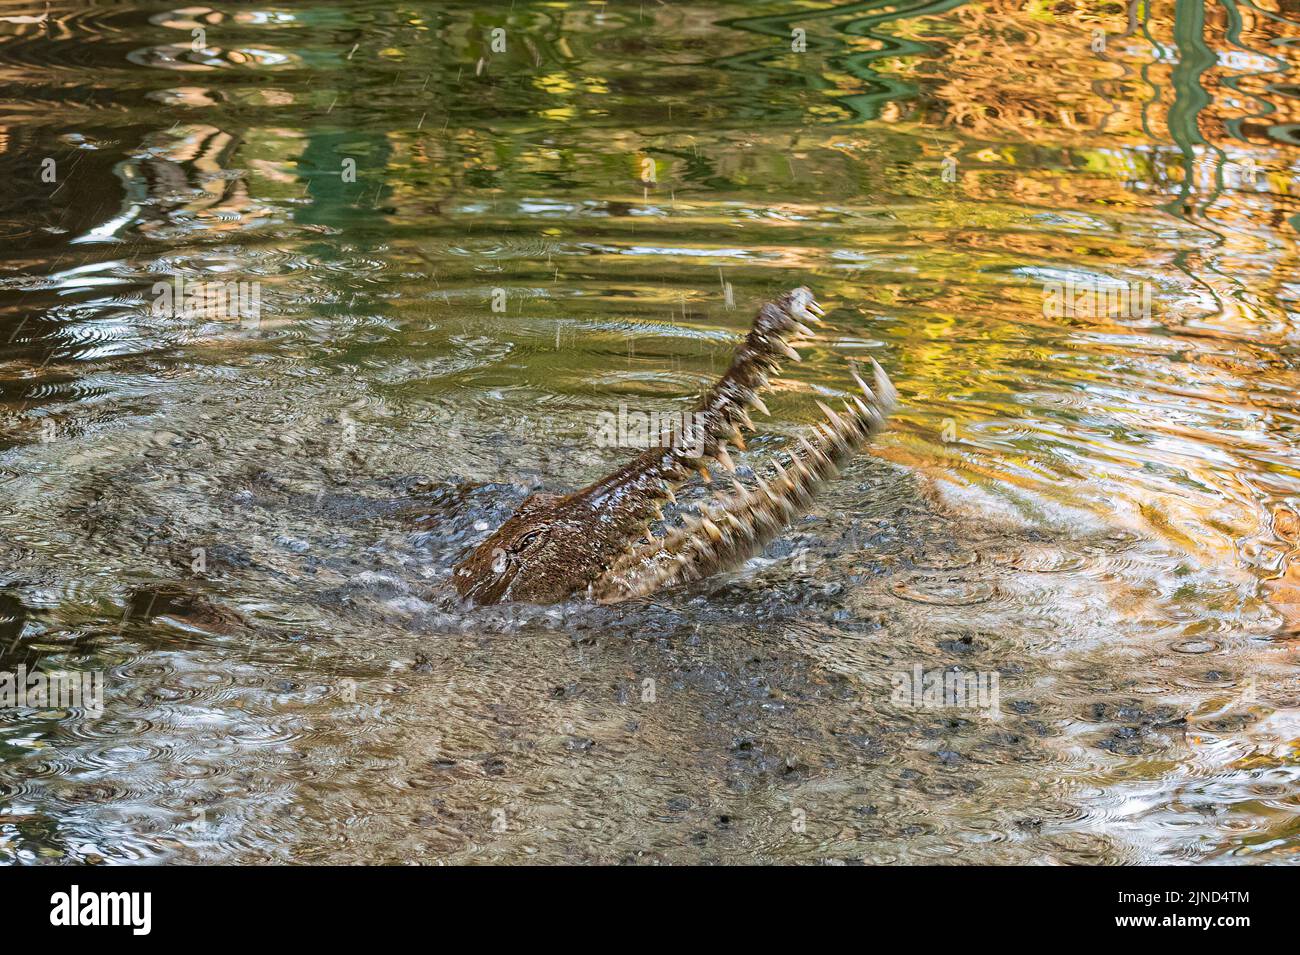 Tête d'un crocodile d'eau douce (Crocodylus johnstoni) avec la bouche ouverte et montrant des dents dans une rivière, territoire du Nord, territoire du Nord, Australie Banque D'Images